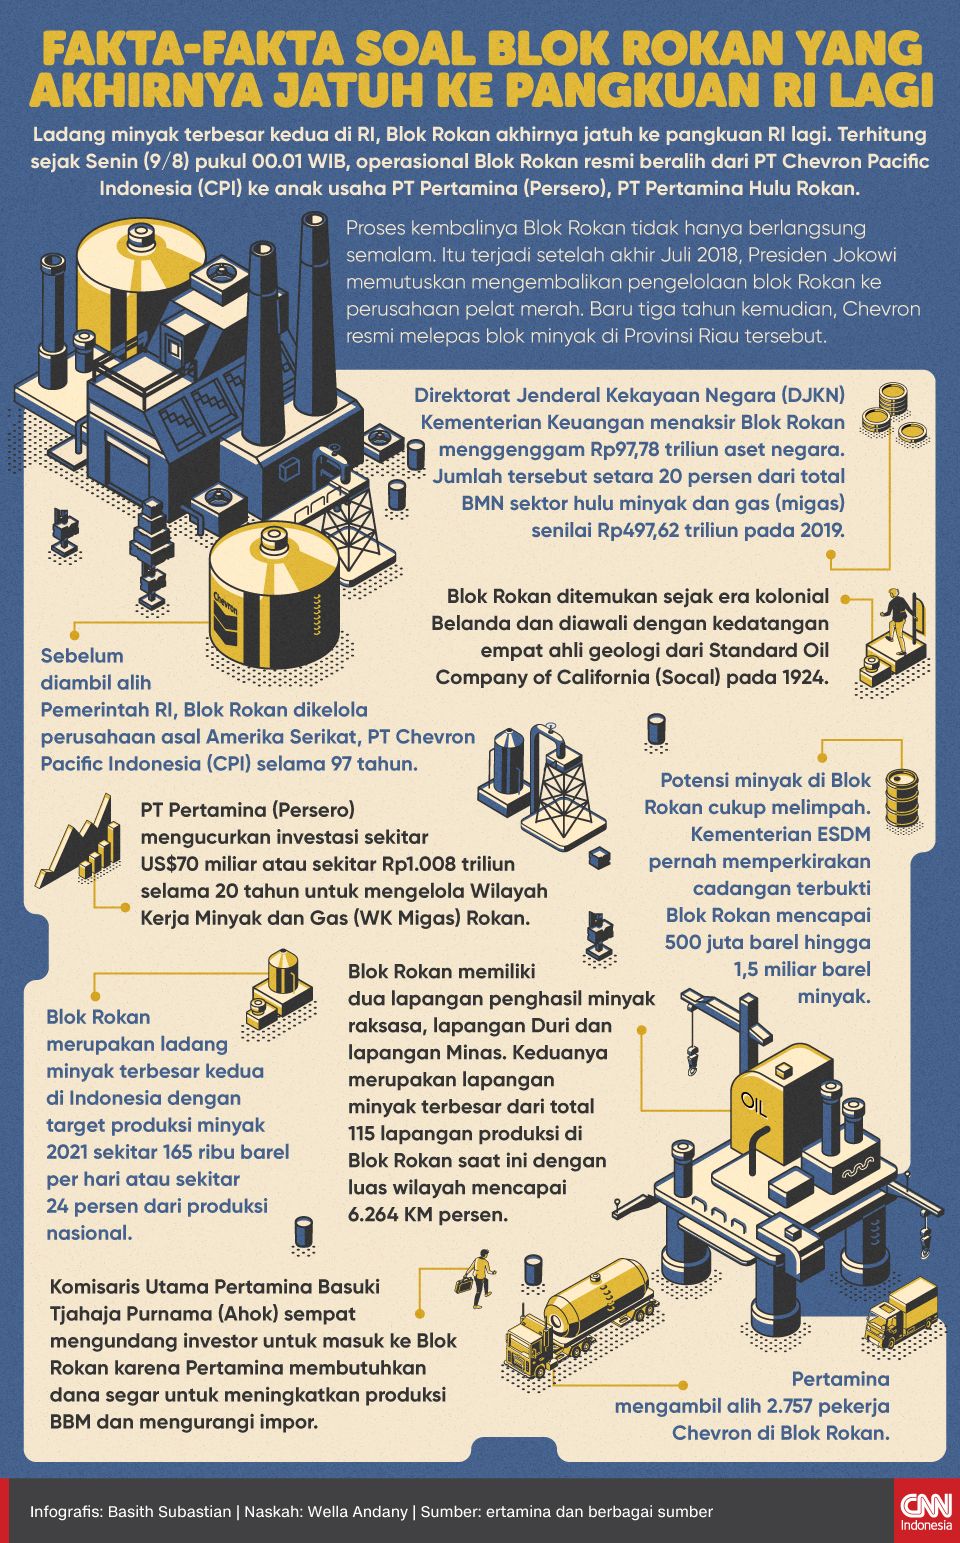 Infografis Fakta-fakta Soal Blok Rokan yang Akhirnya Jatuh ke Pangkuan RI Lagi